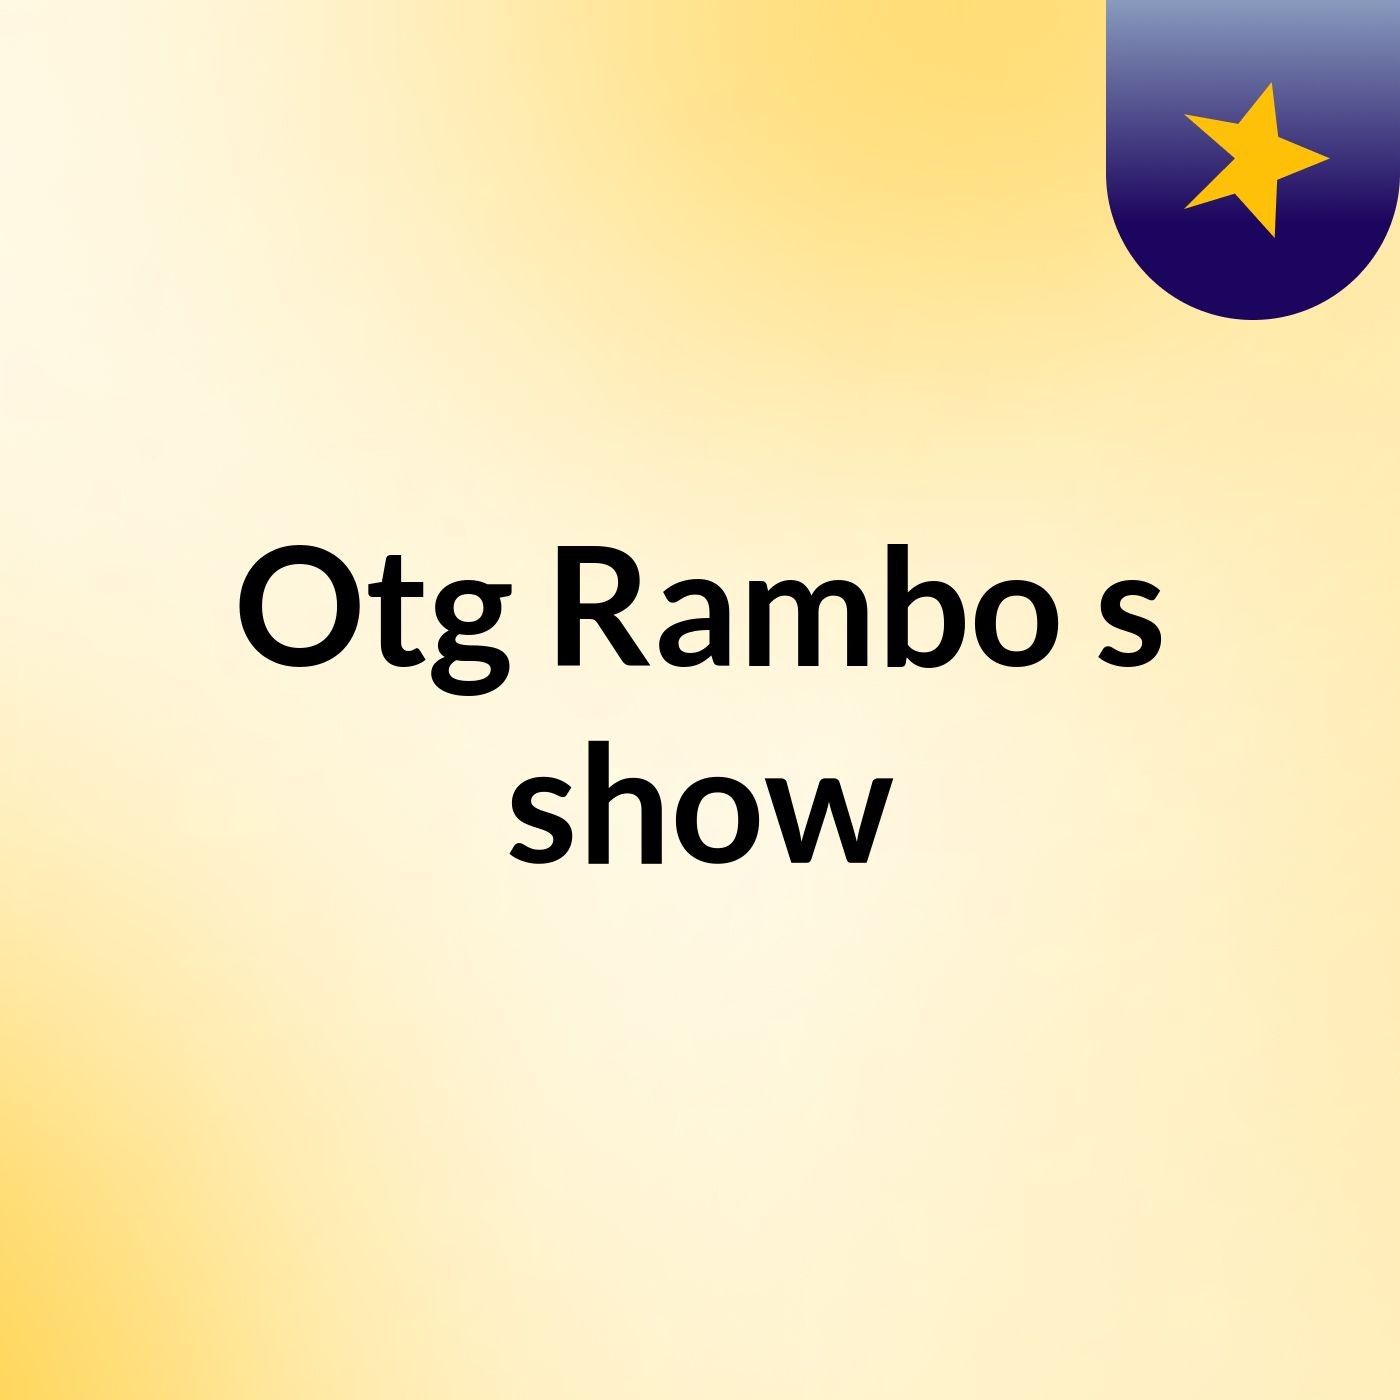 Otg Rambo's show